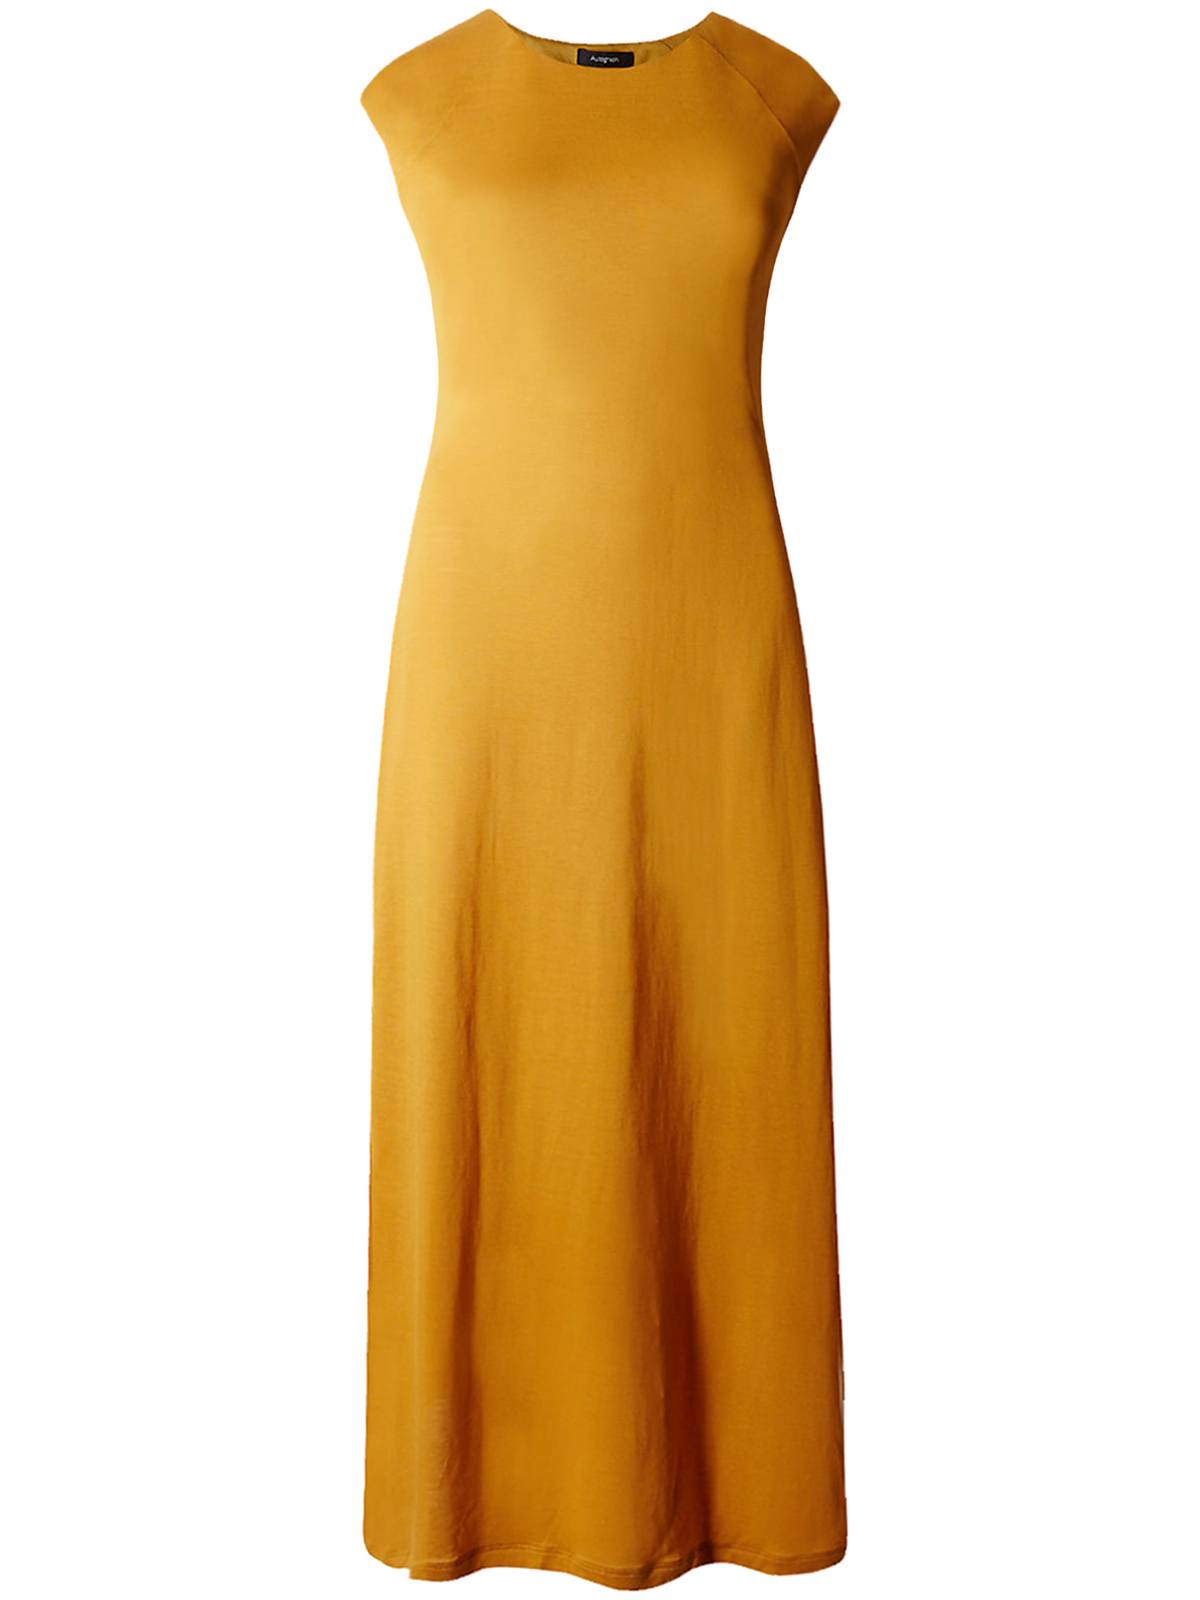 4utograph OCHRE Cap Sleeve Column Dress - Size 6 to 22